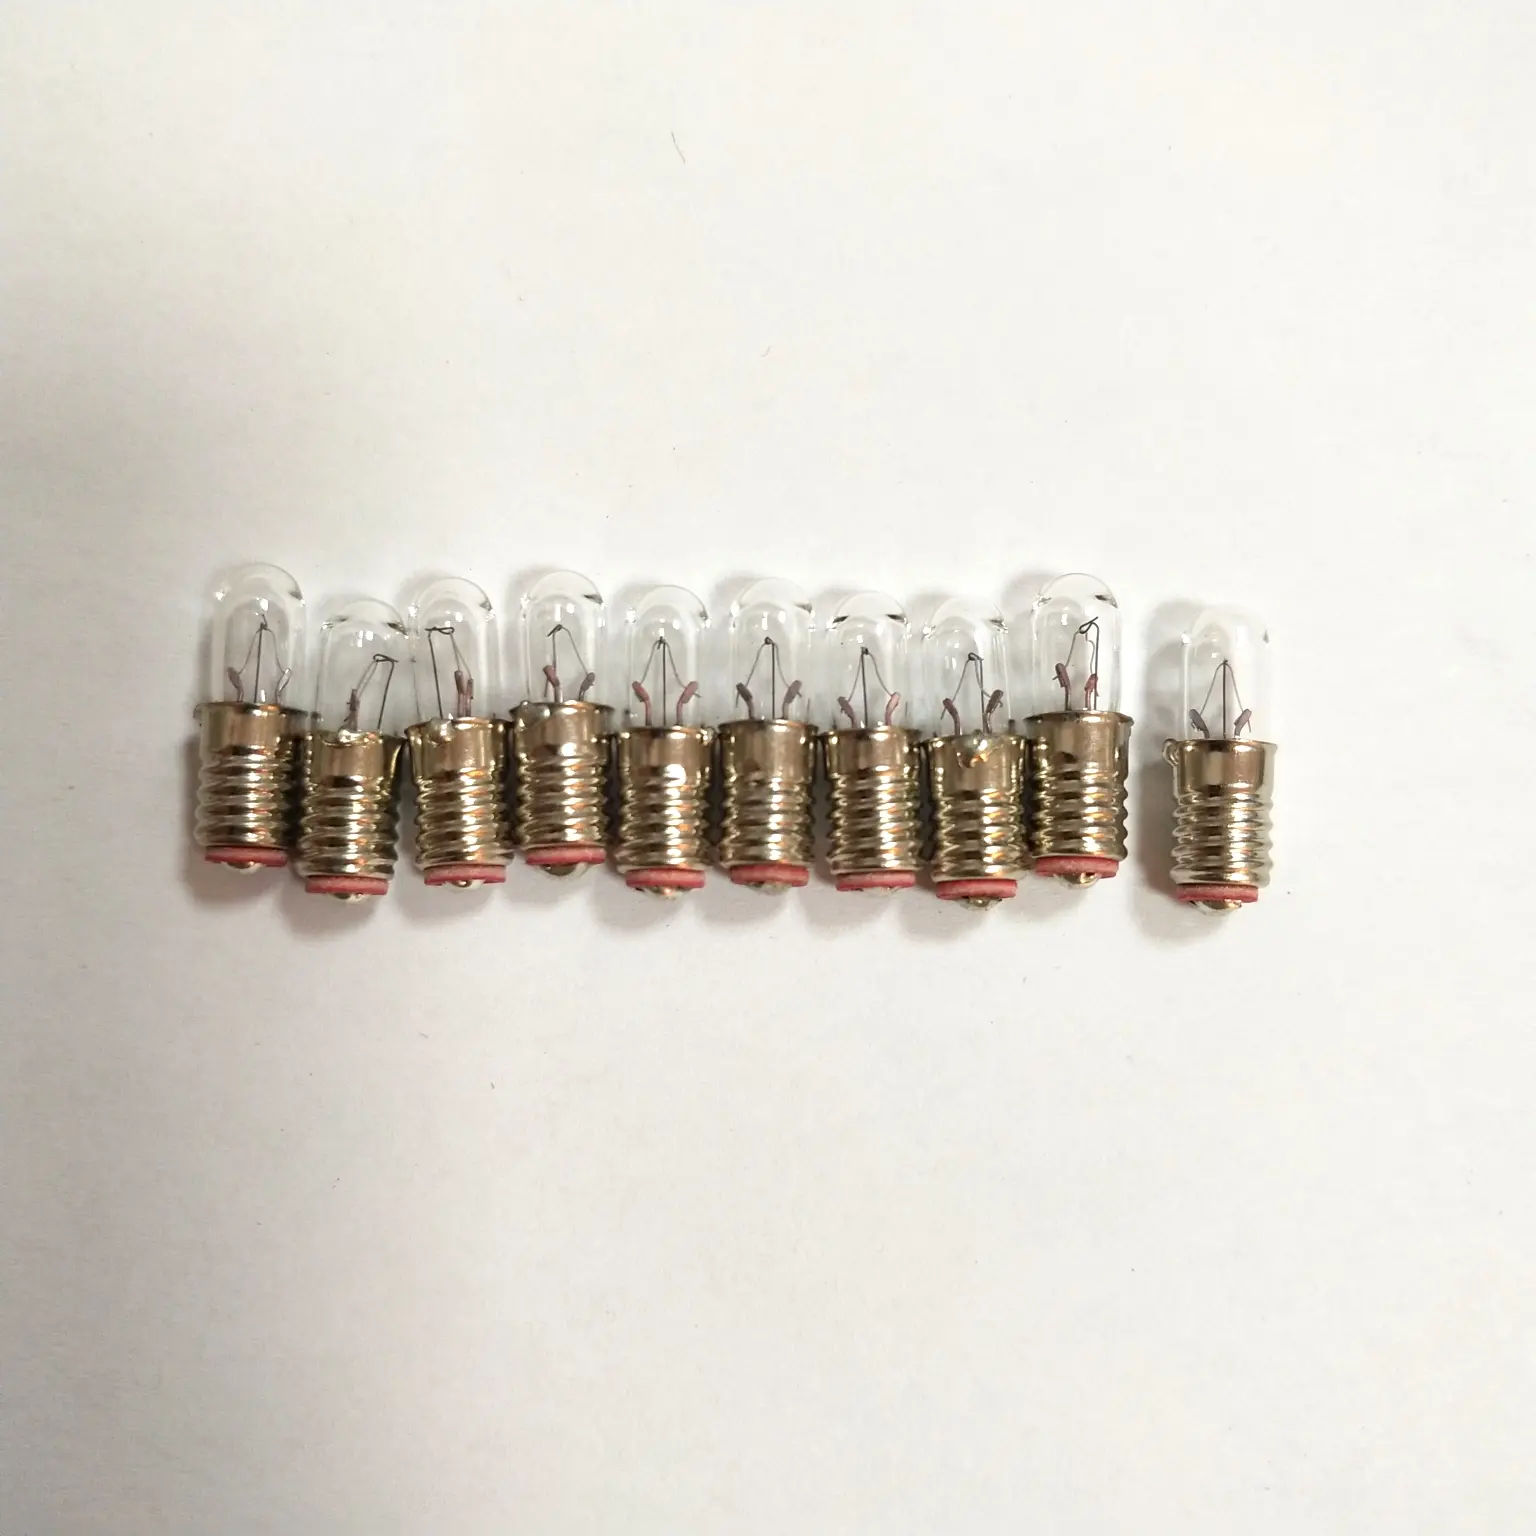 Ampoule E5 à vis E5 5x17mm, avec instructions Miniature, lampe à incandescence, 0.6W, 6.3V, 12V, 24V, nouveauté